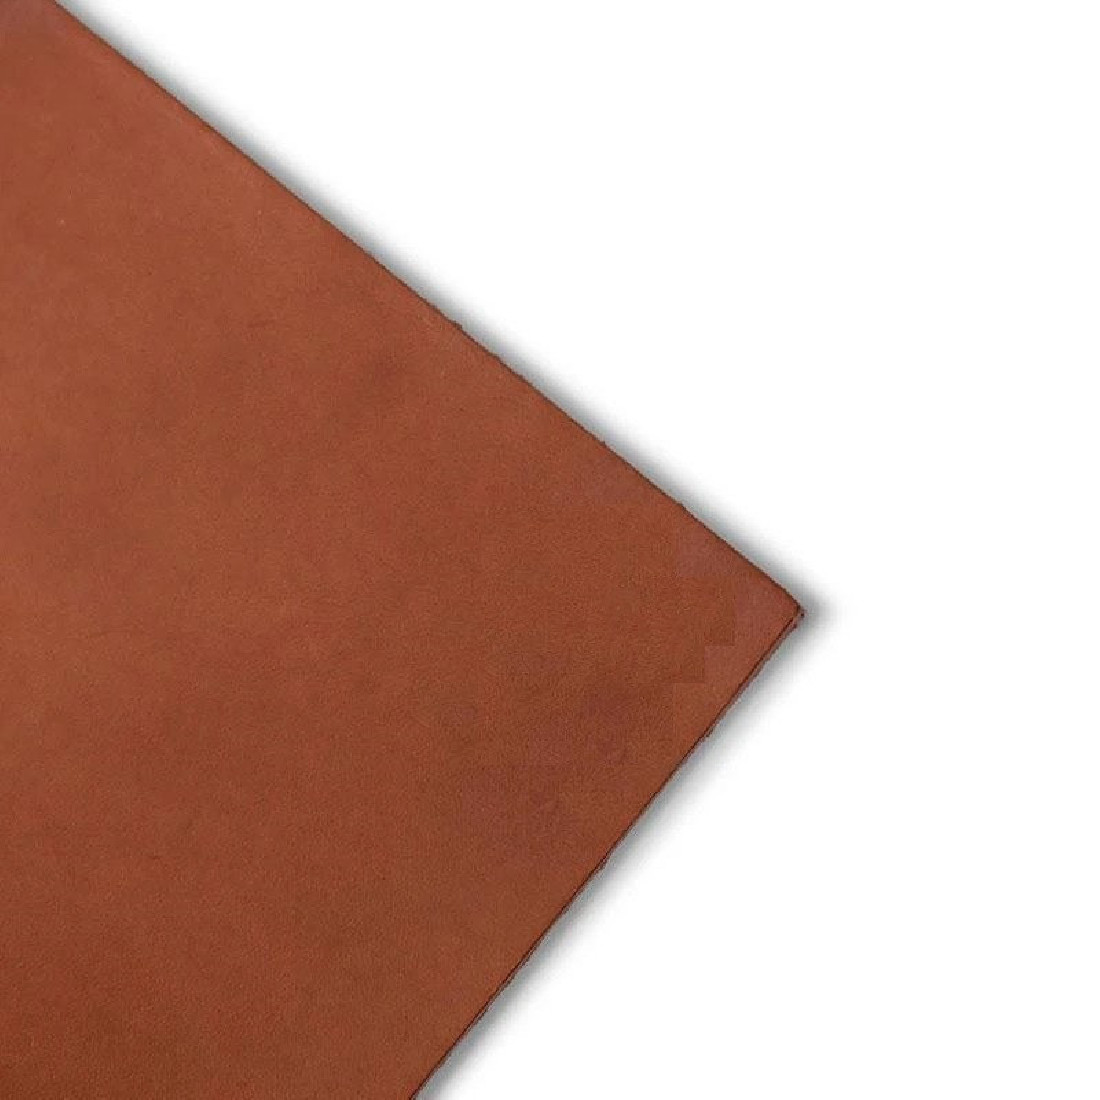 Paper Republic grand voyageur [xl] | cognac leather journal